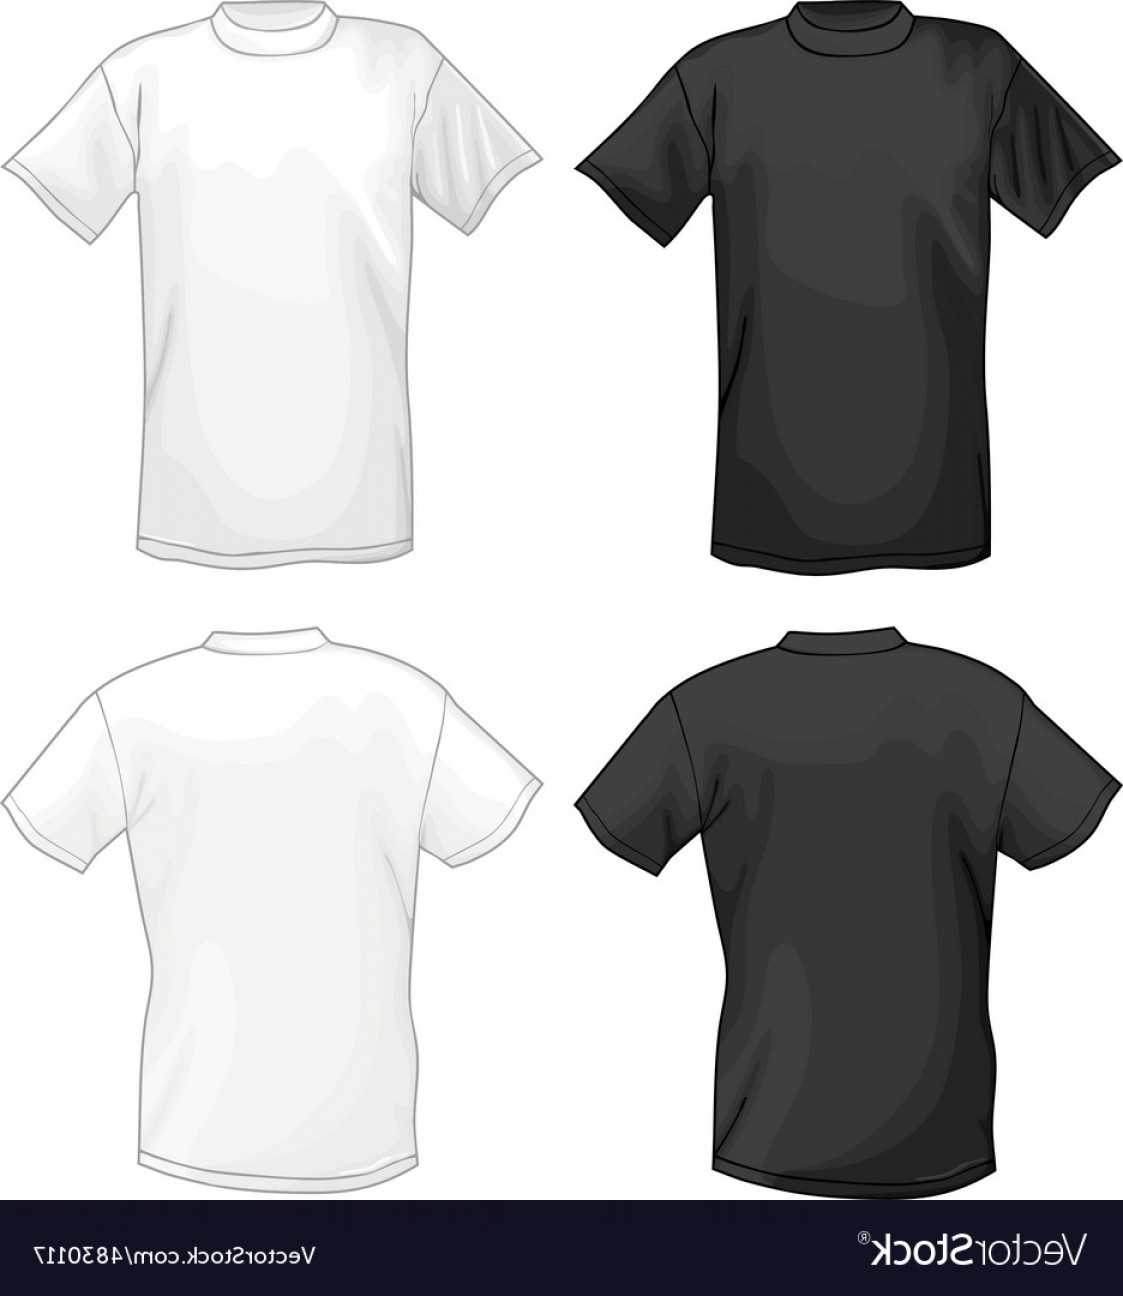 029 Template Ideas T Shirt Design Templates Unusual Software Throughout Blank T Shirt Design Template Psd